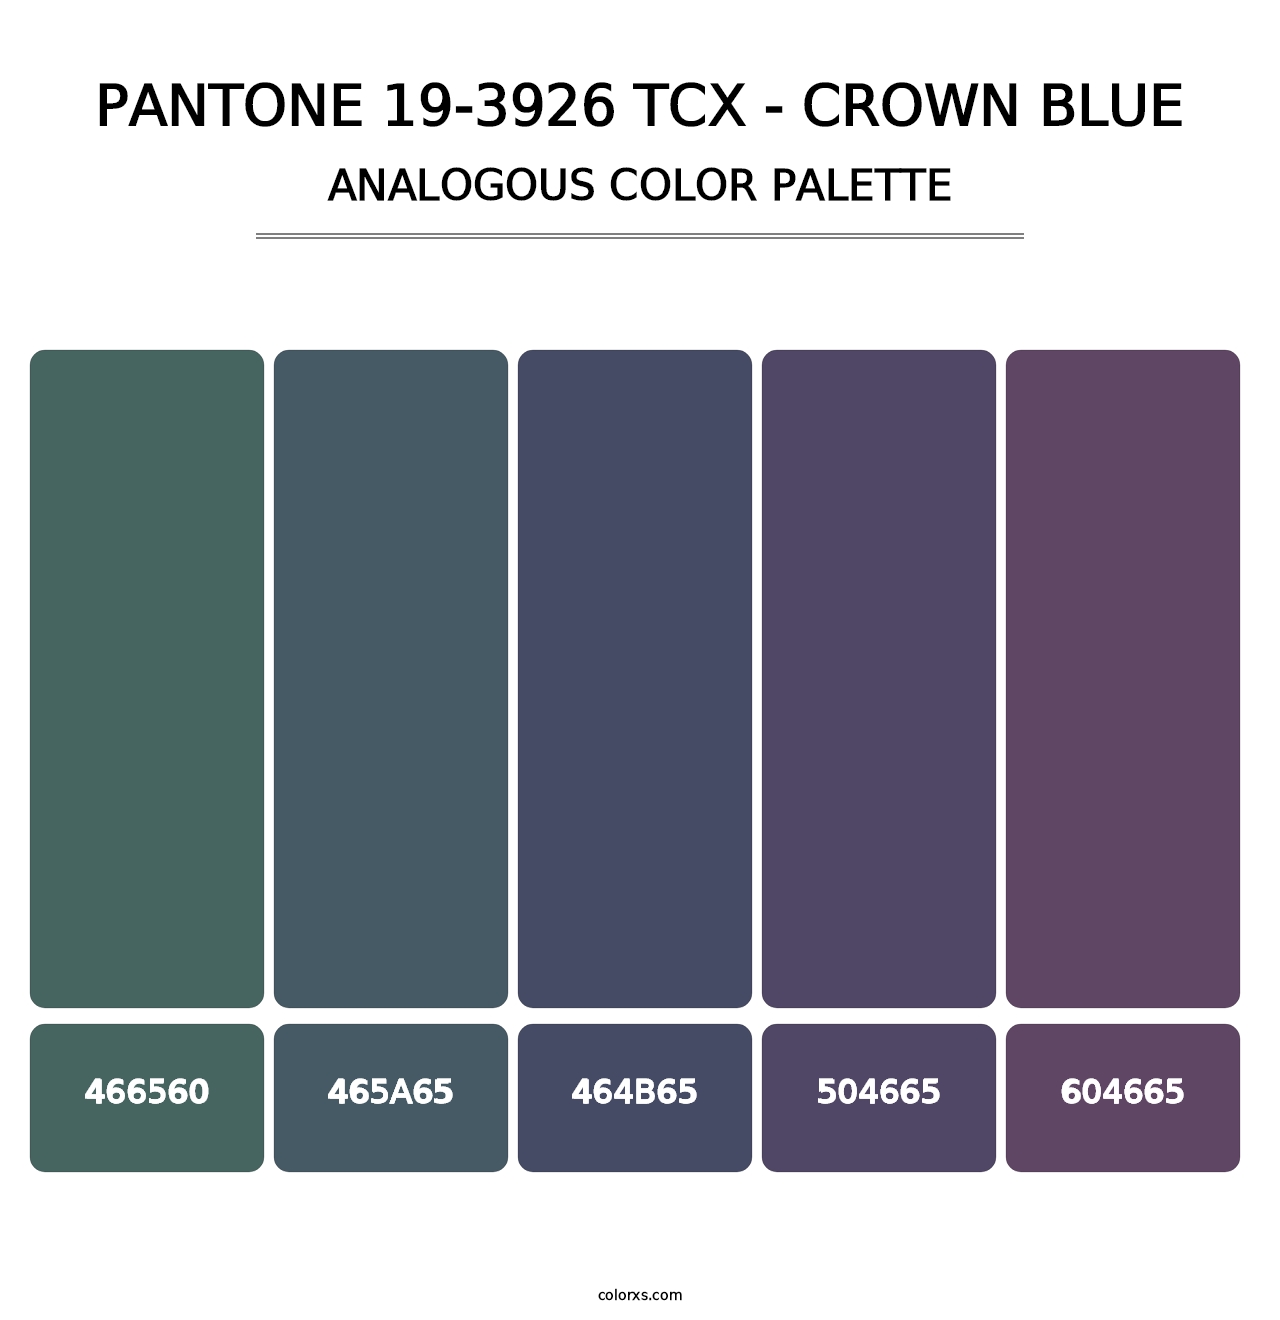 PANTONE 19-3926 TCX - Crown Blue - Analogous Color Palette